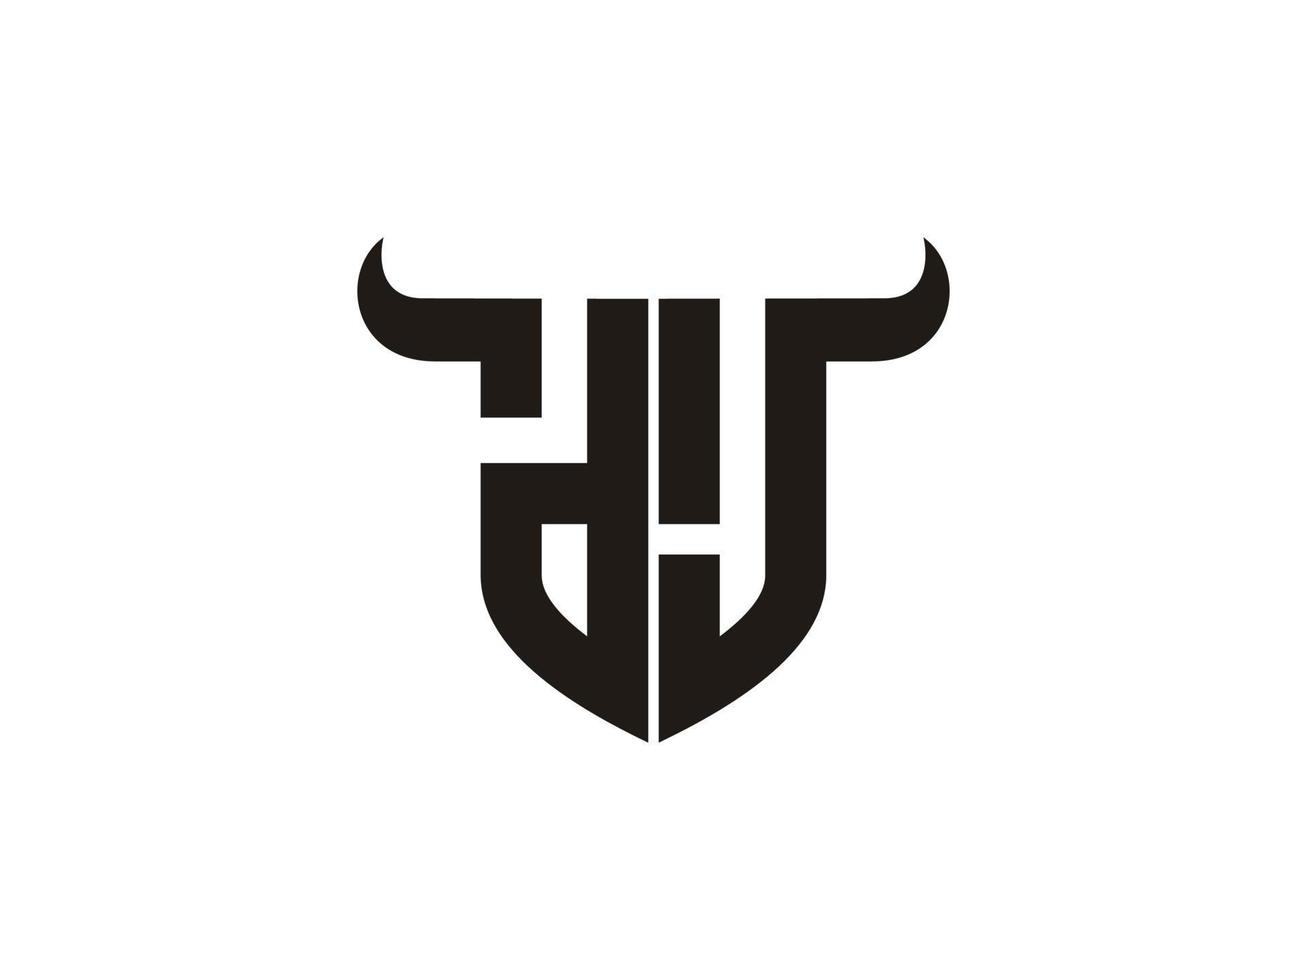 création initiale du logo dj bull. vecteur